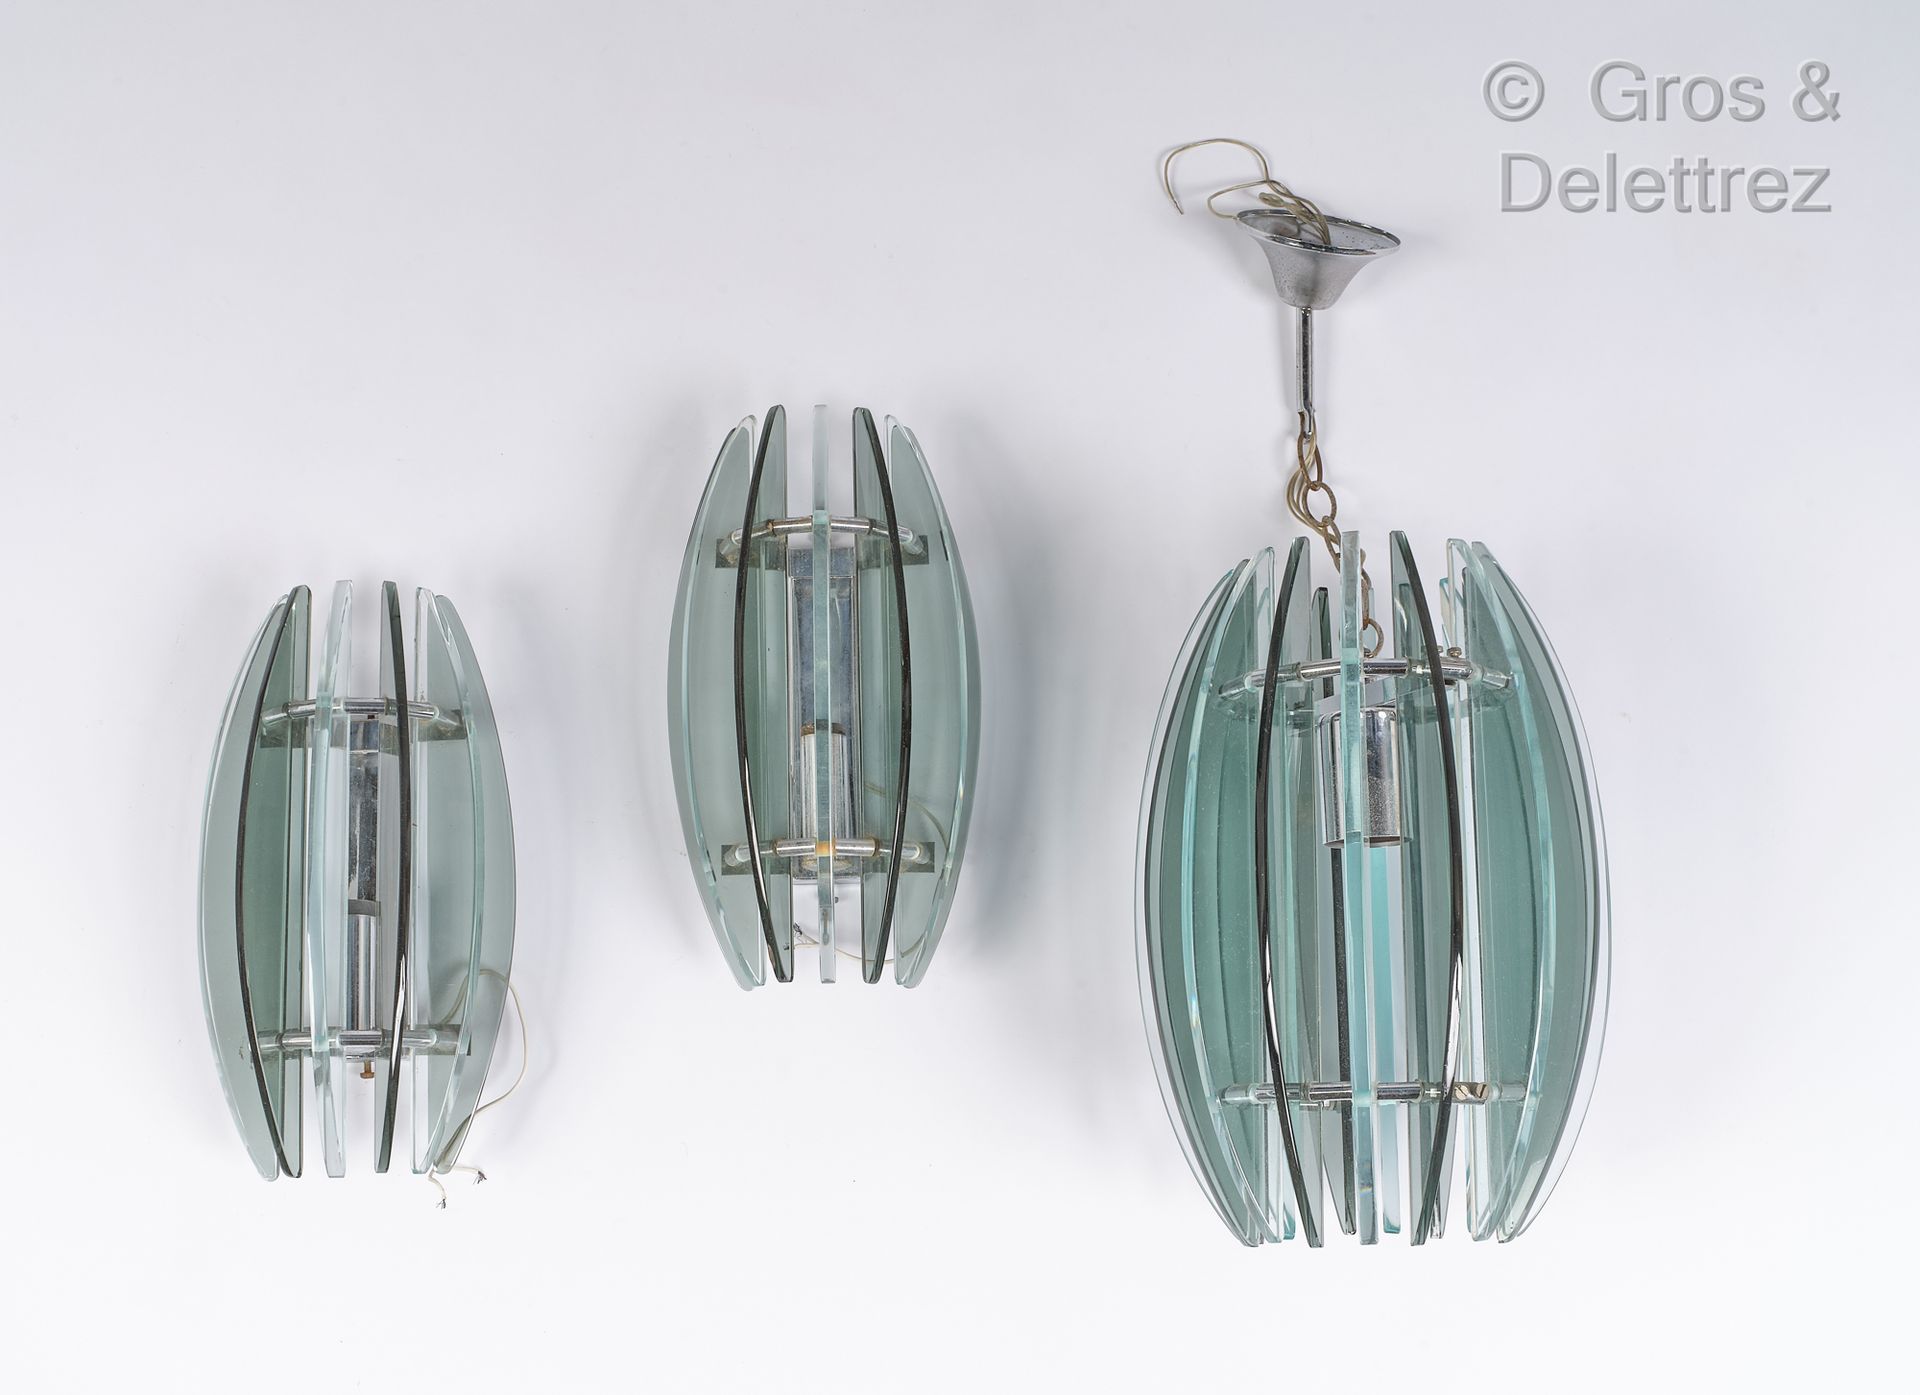 Null 意大利作品

套装包括一盏顶灯和一对有色玻璃和镀铬金属的壁灯

吸顶灯，高：55厘米，深：22厘米

壁灯，高：29厘米，宽：18厘米，深：12厘米